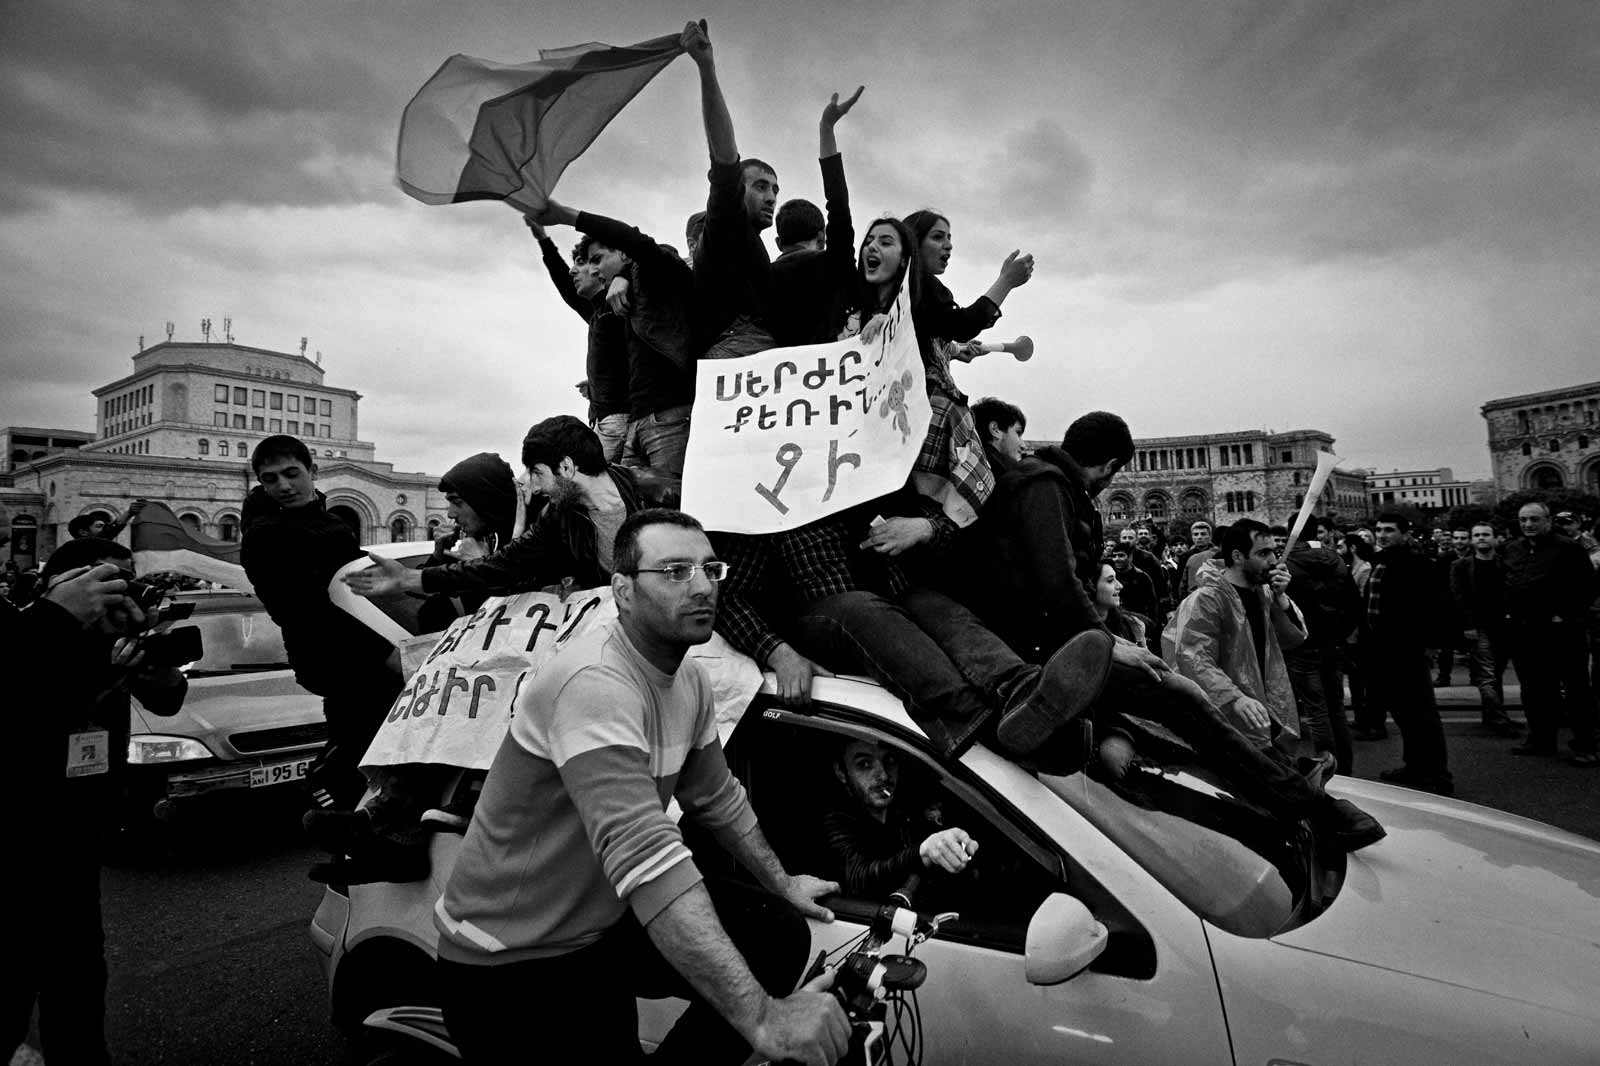 Demonstrators at Republic Square, Yerevan, Armenia, April 20, 2018